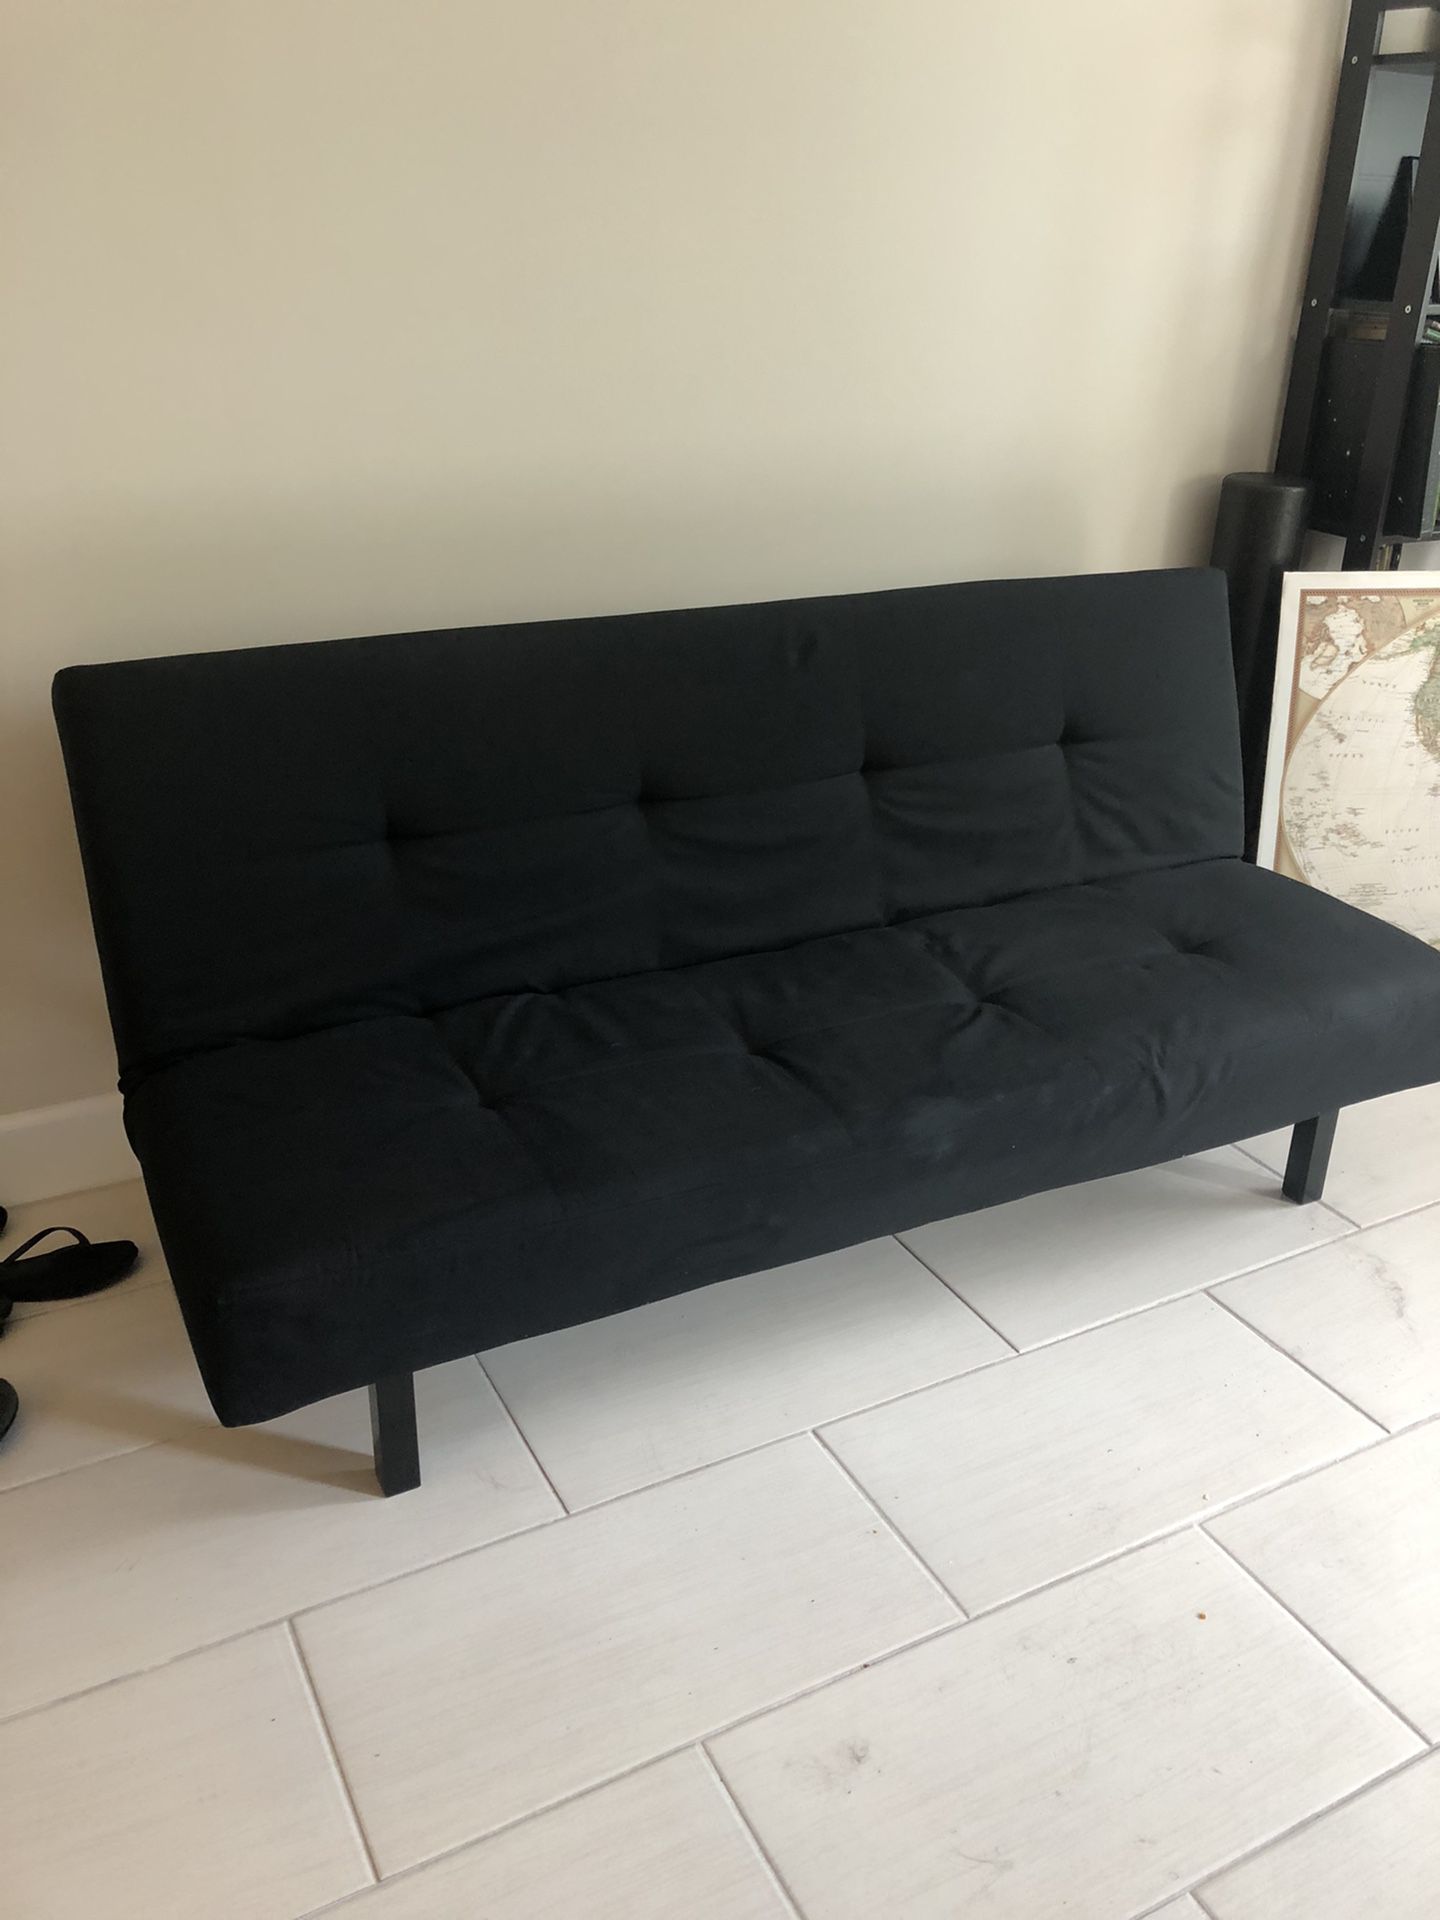 IKEA black sleeper sofa